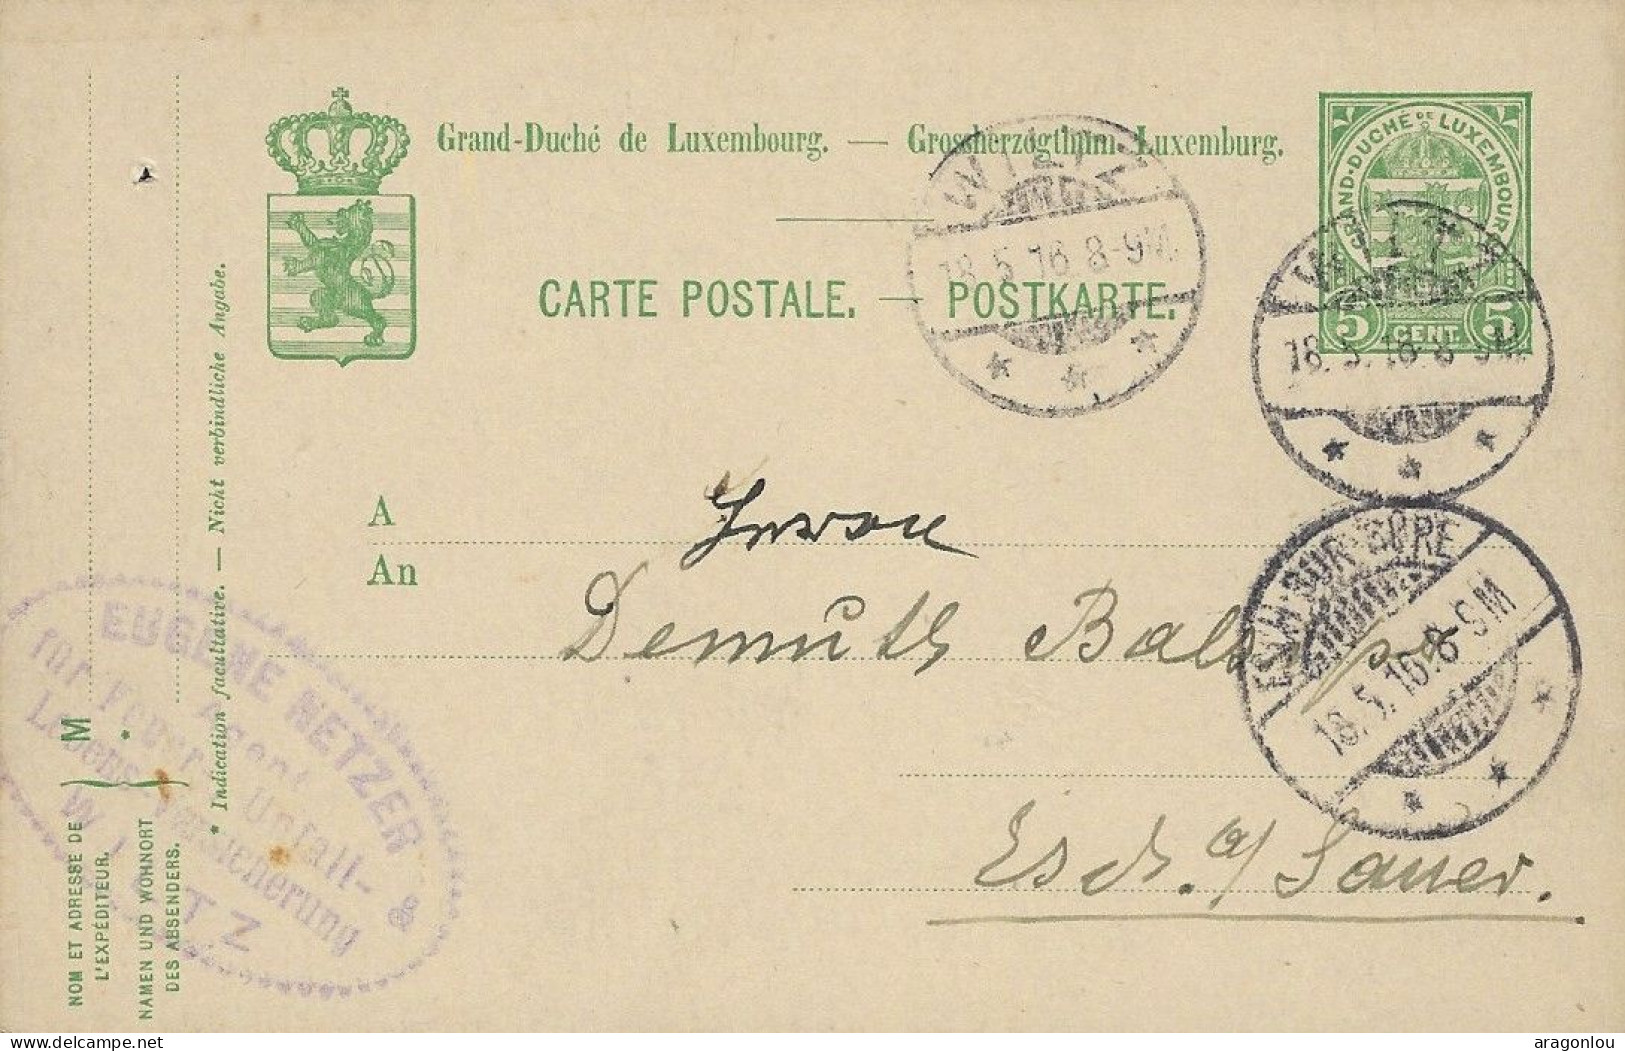 Luxembourg - Luxemburg - Carte-Postale 1916   Cachet Esch-sur-Sûre  -  Cachet Wiltz - Enteros Postales